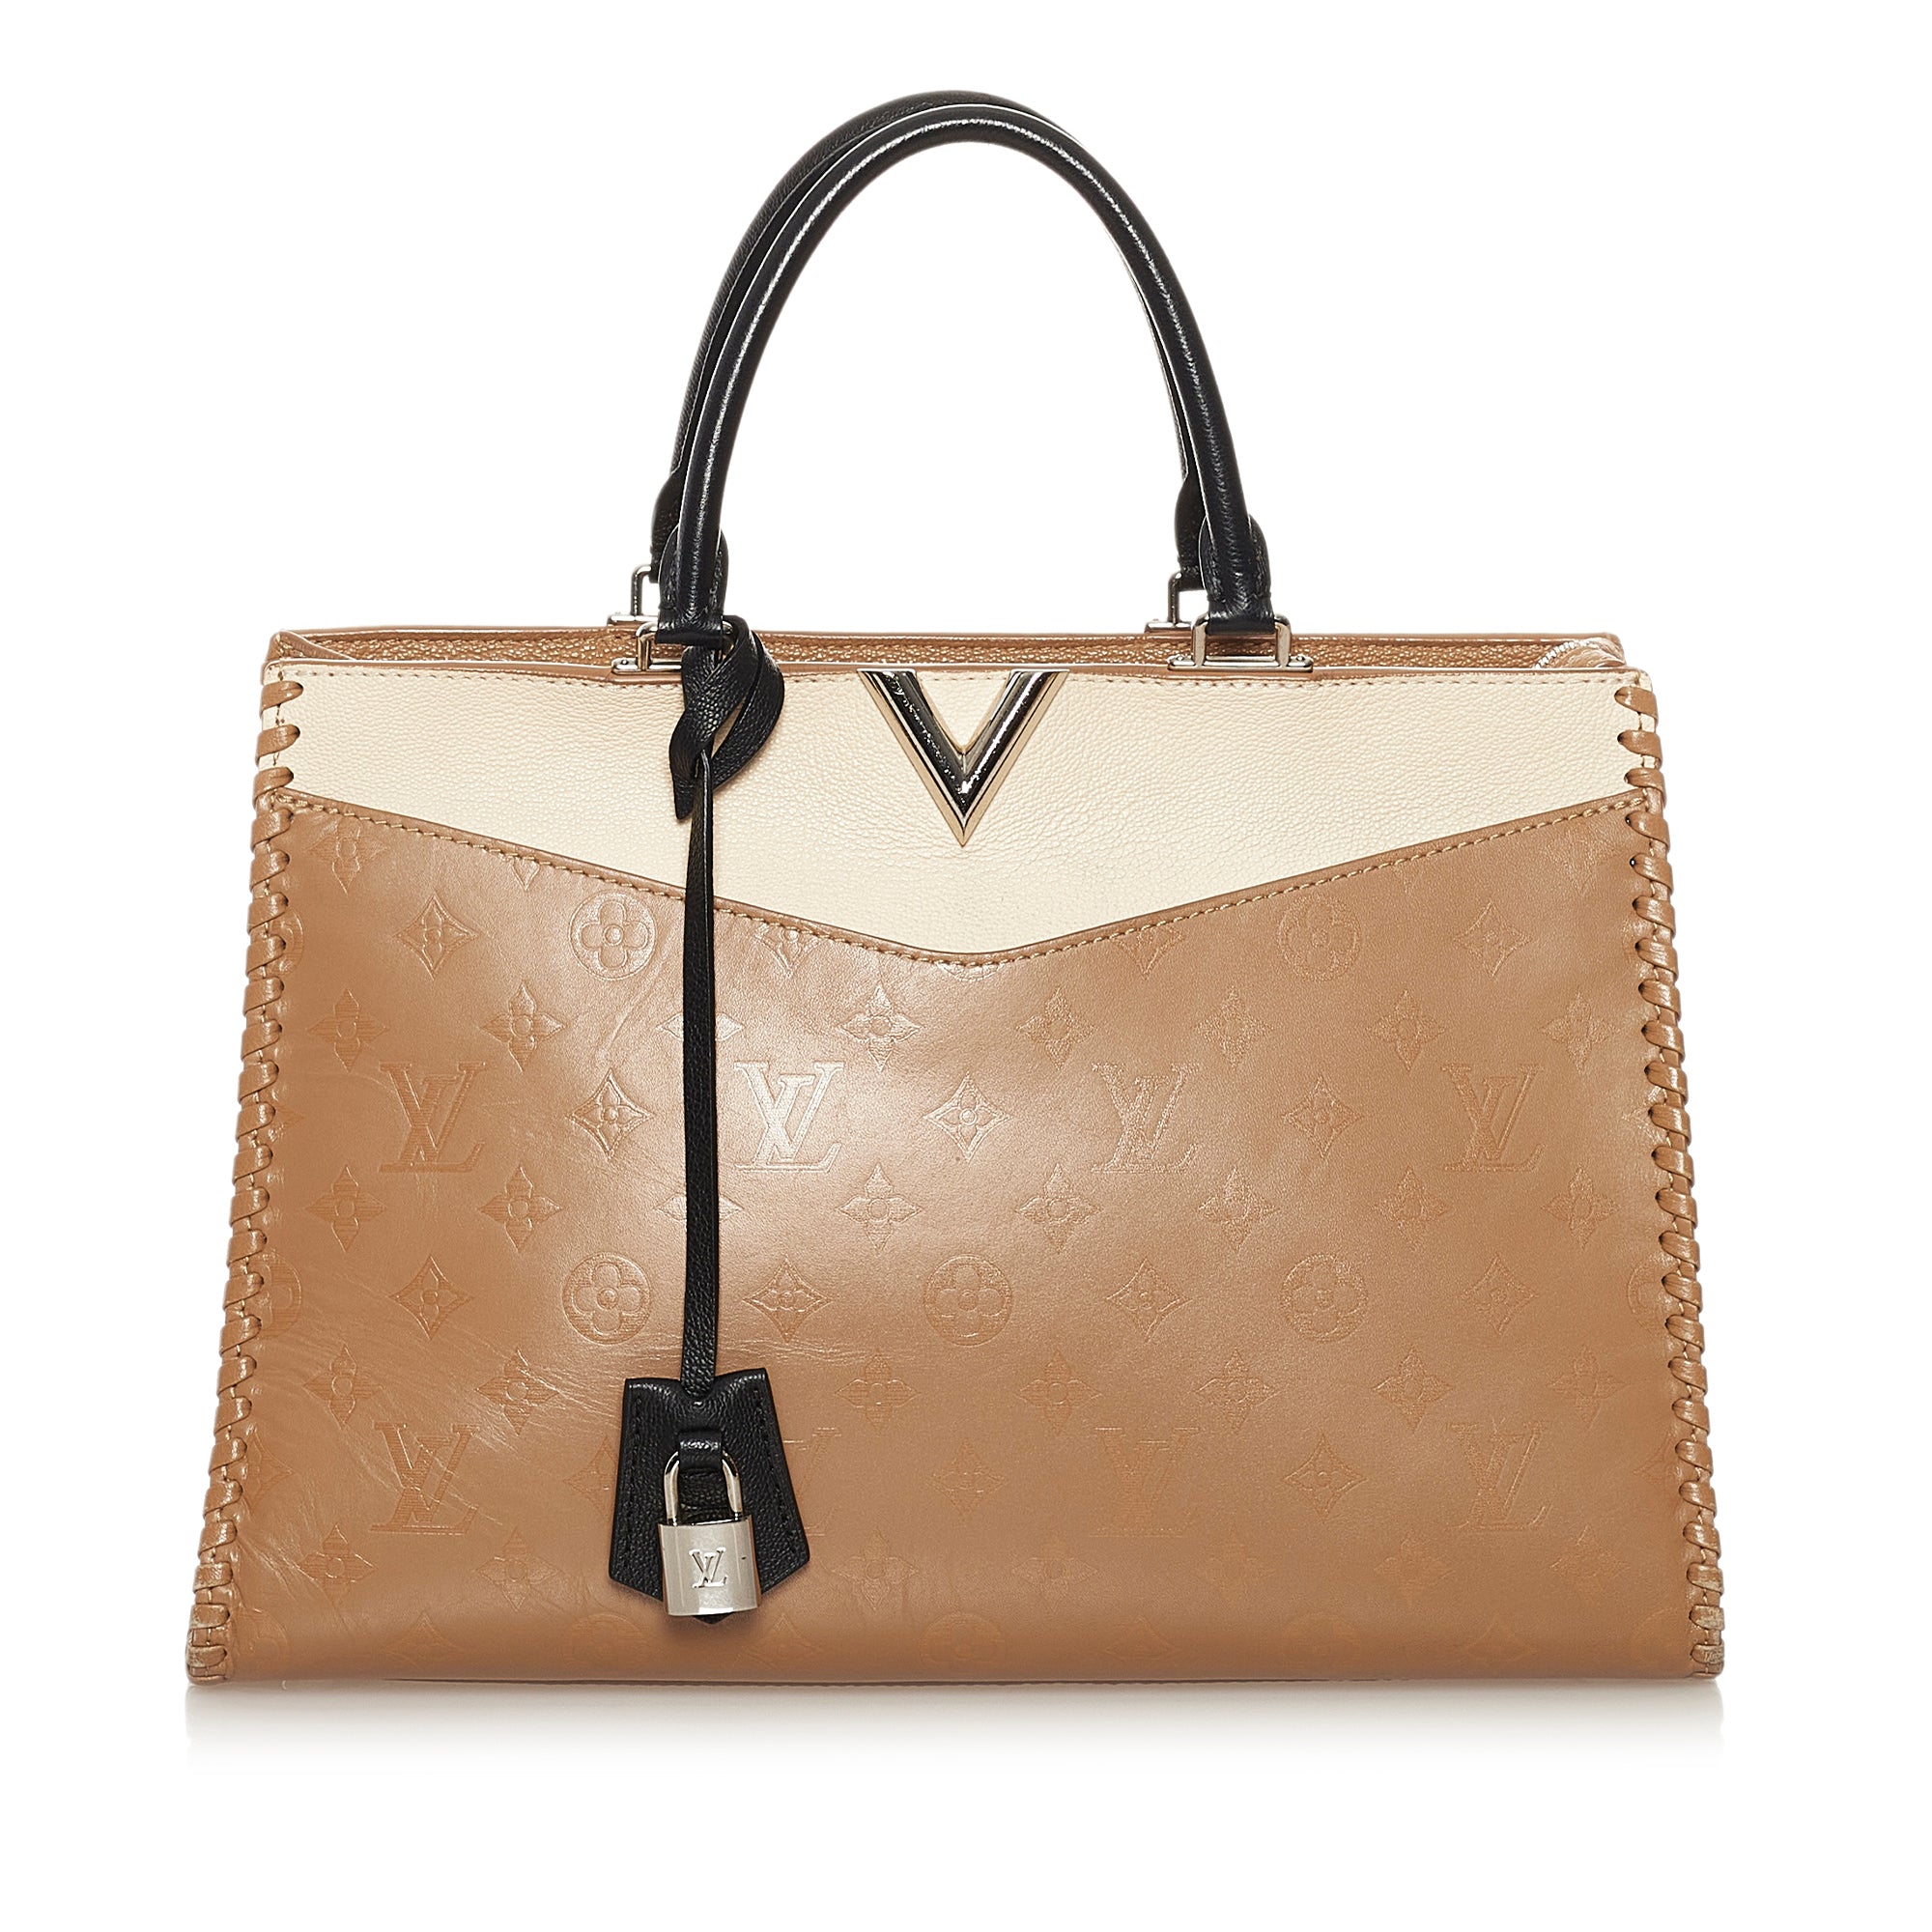 Handbags Louis Vuitton Louis Vuitton Very Hobo Bag Sesame Creme